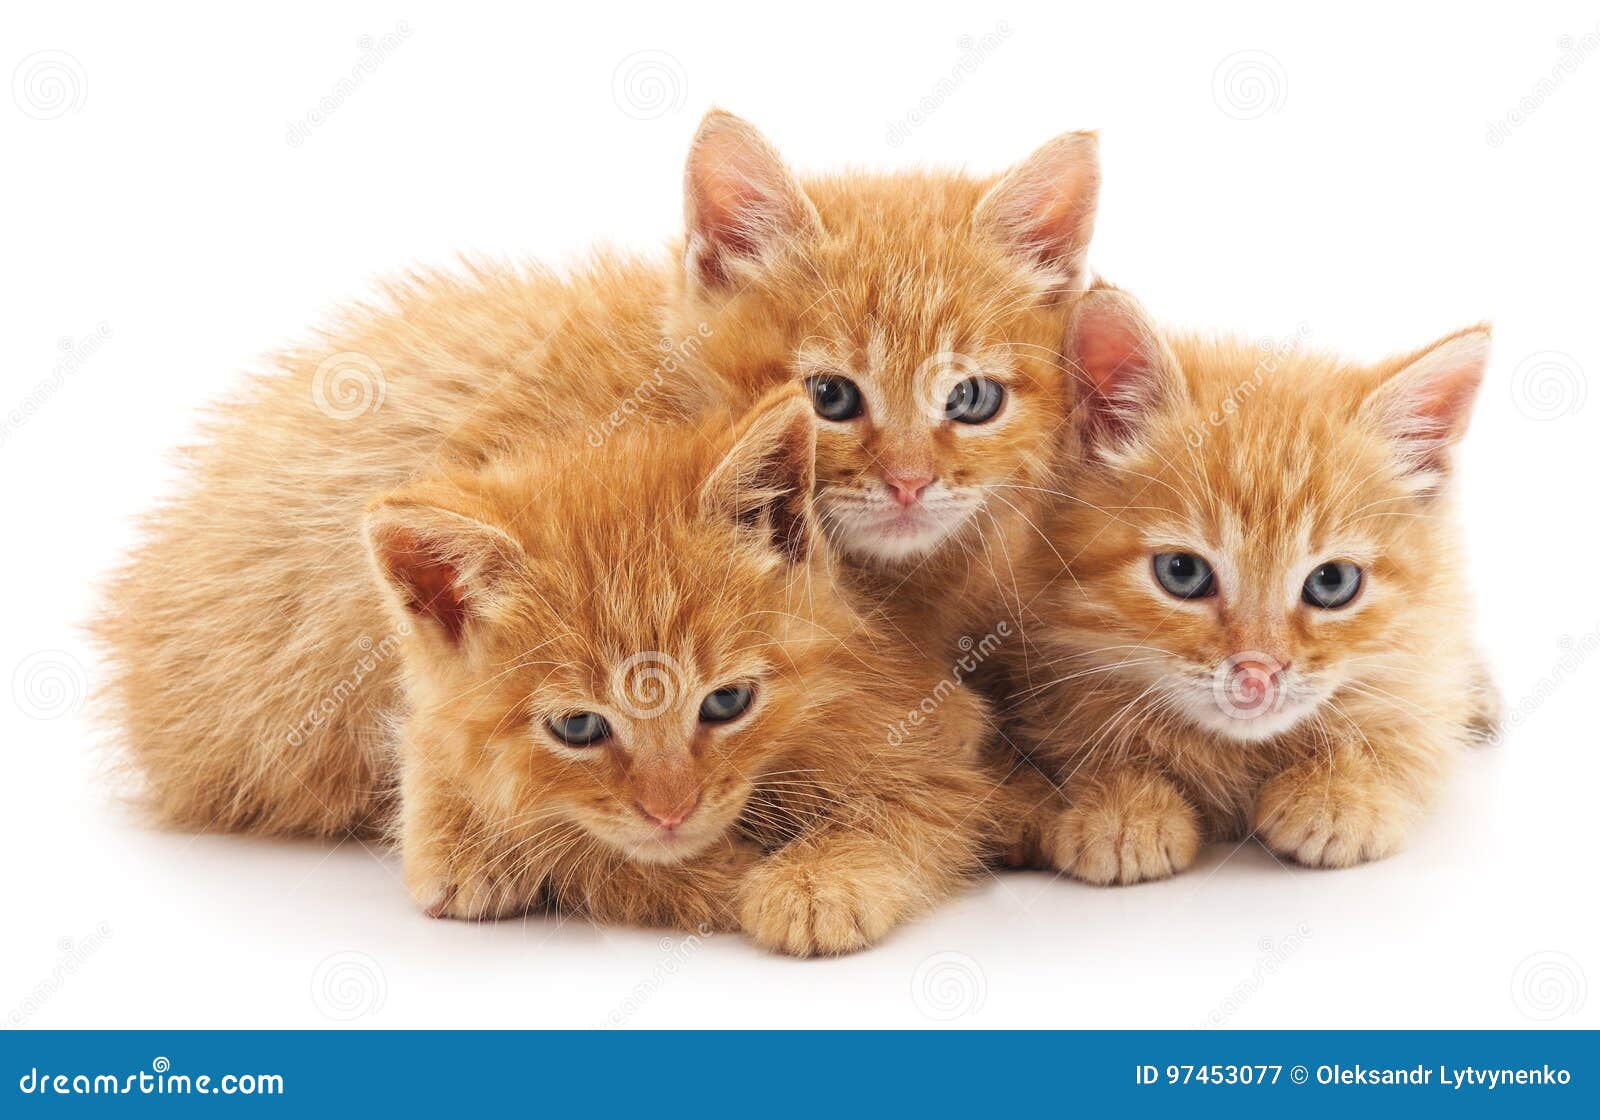 is meer dan Weg regiment Drie kleine katjes stock afbeelding. Image of rasecht - 97453077